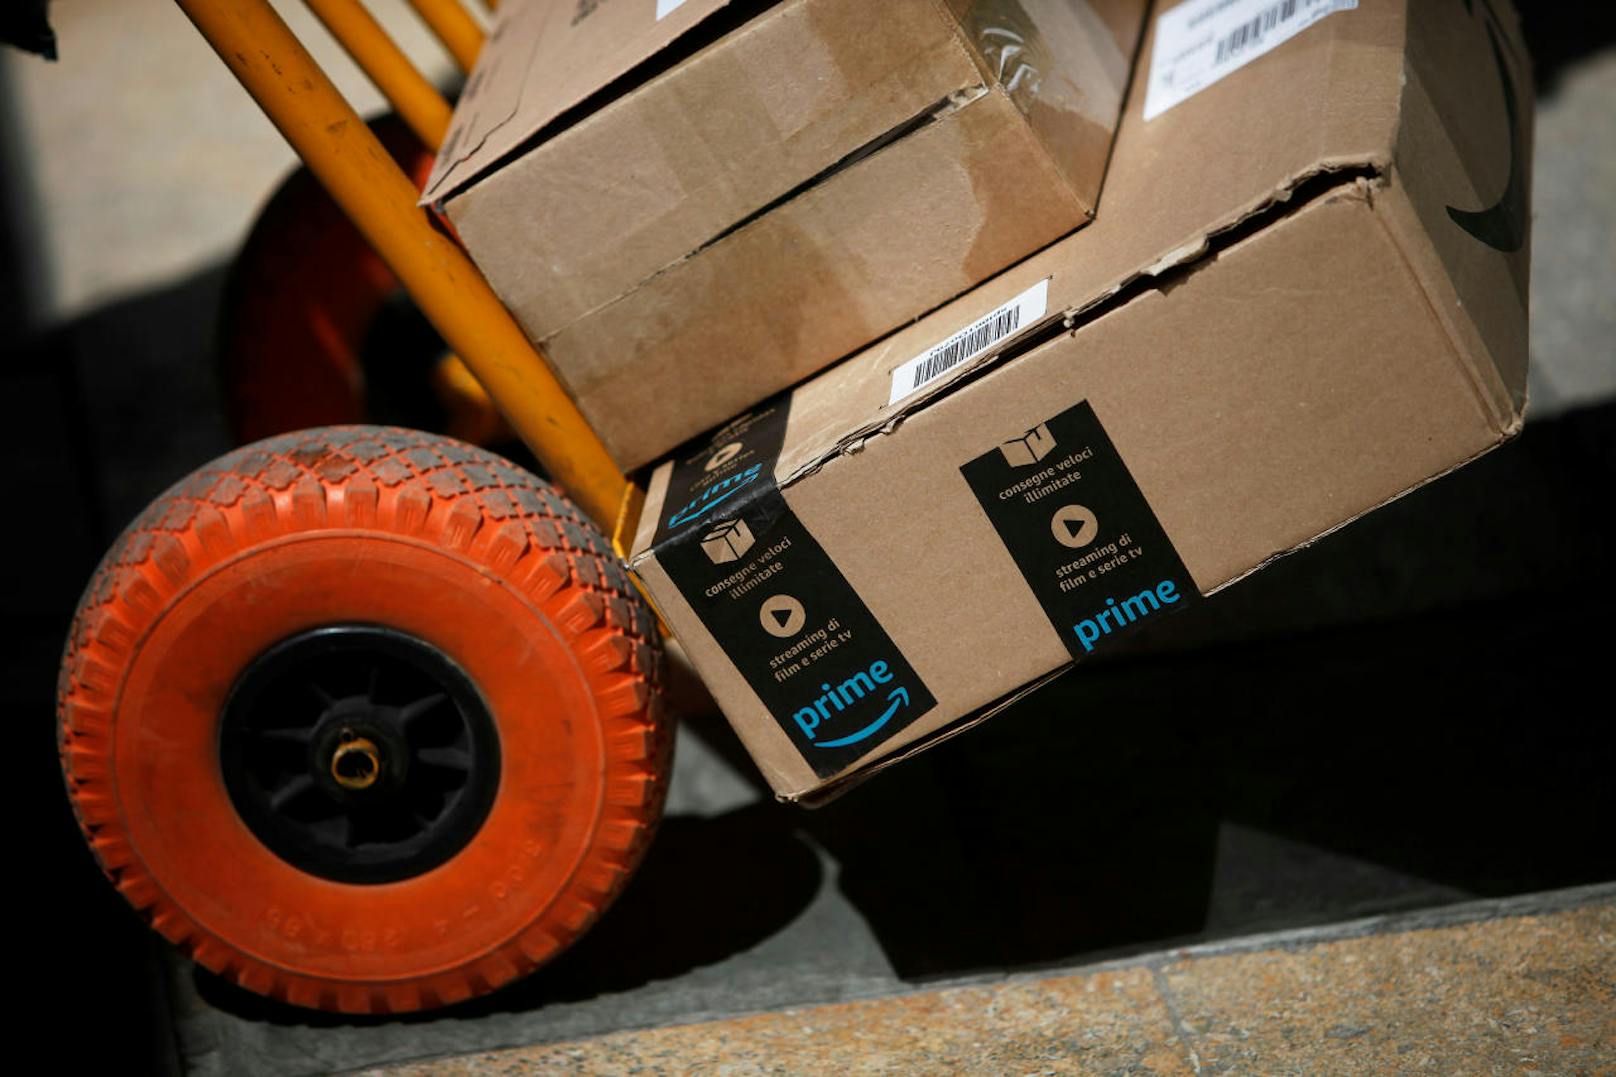 Ein Algorithmus arbeitet für Amazon die Bestellungen ab. Dieser berechnet anhand der Maße des Produkts eine von 30 vorgegebenen Verpackungsgrößen.